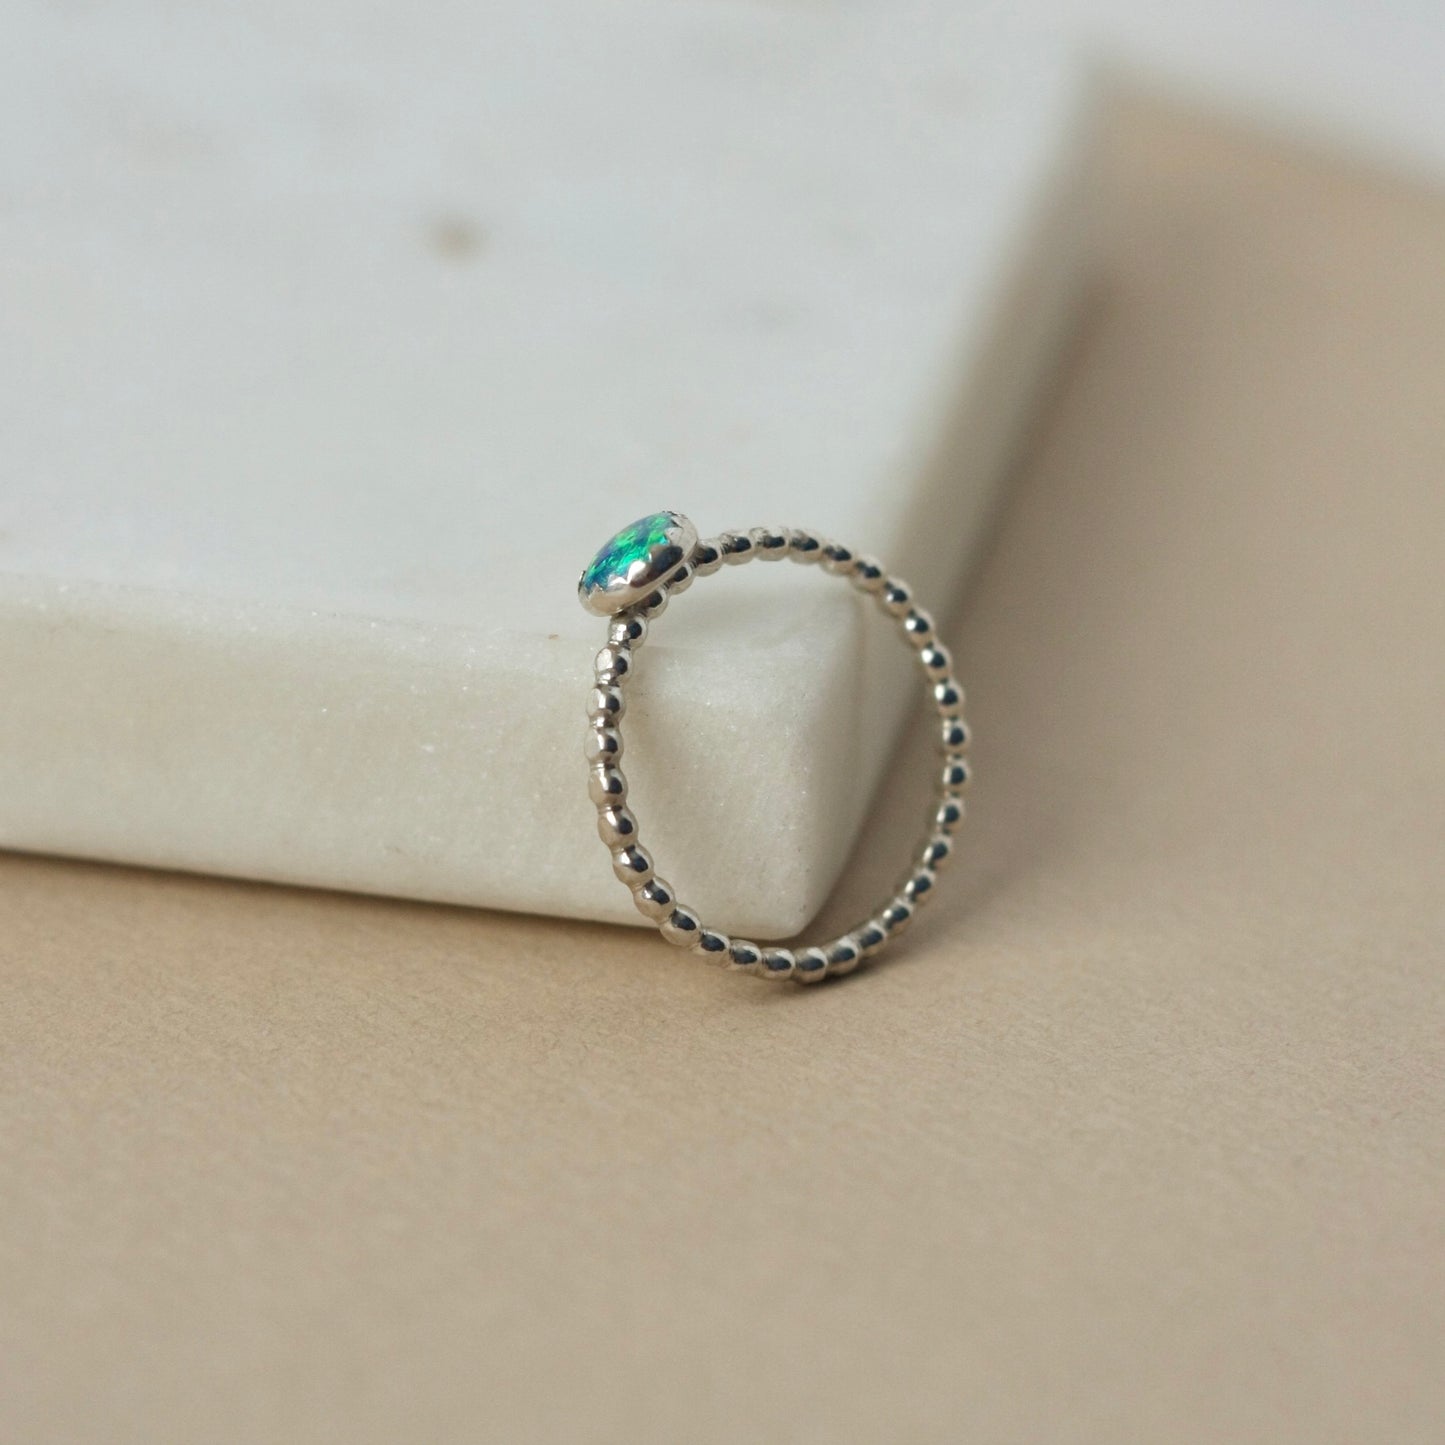 Australian Opal Sterling Silver Ring